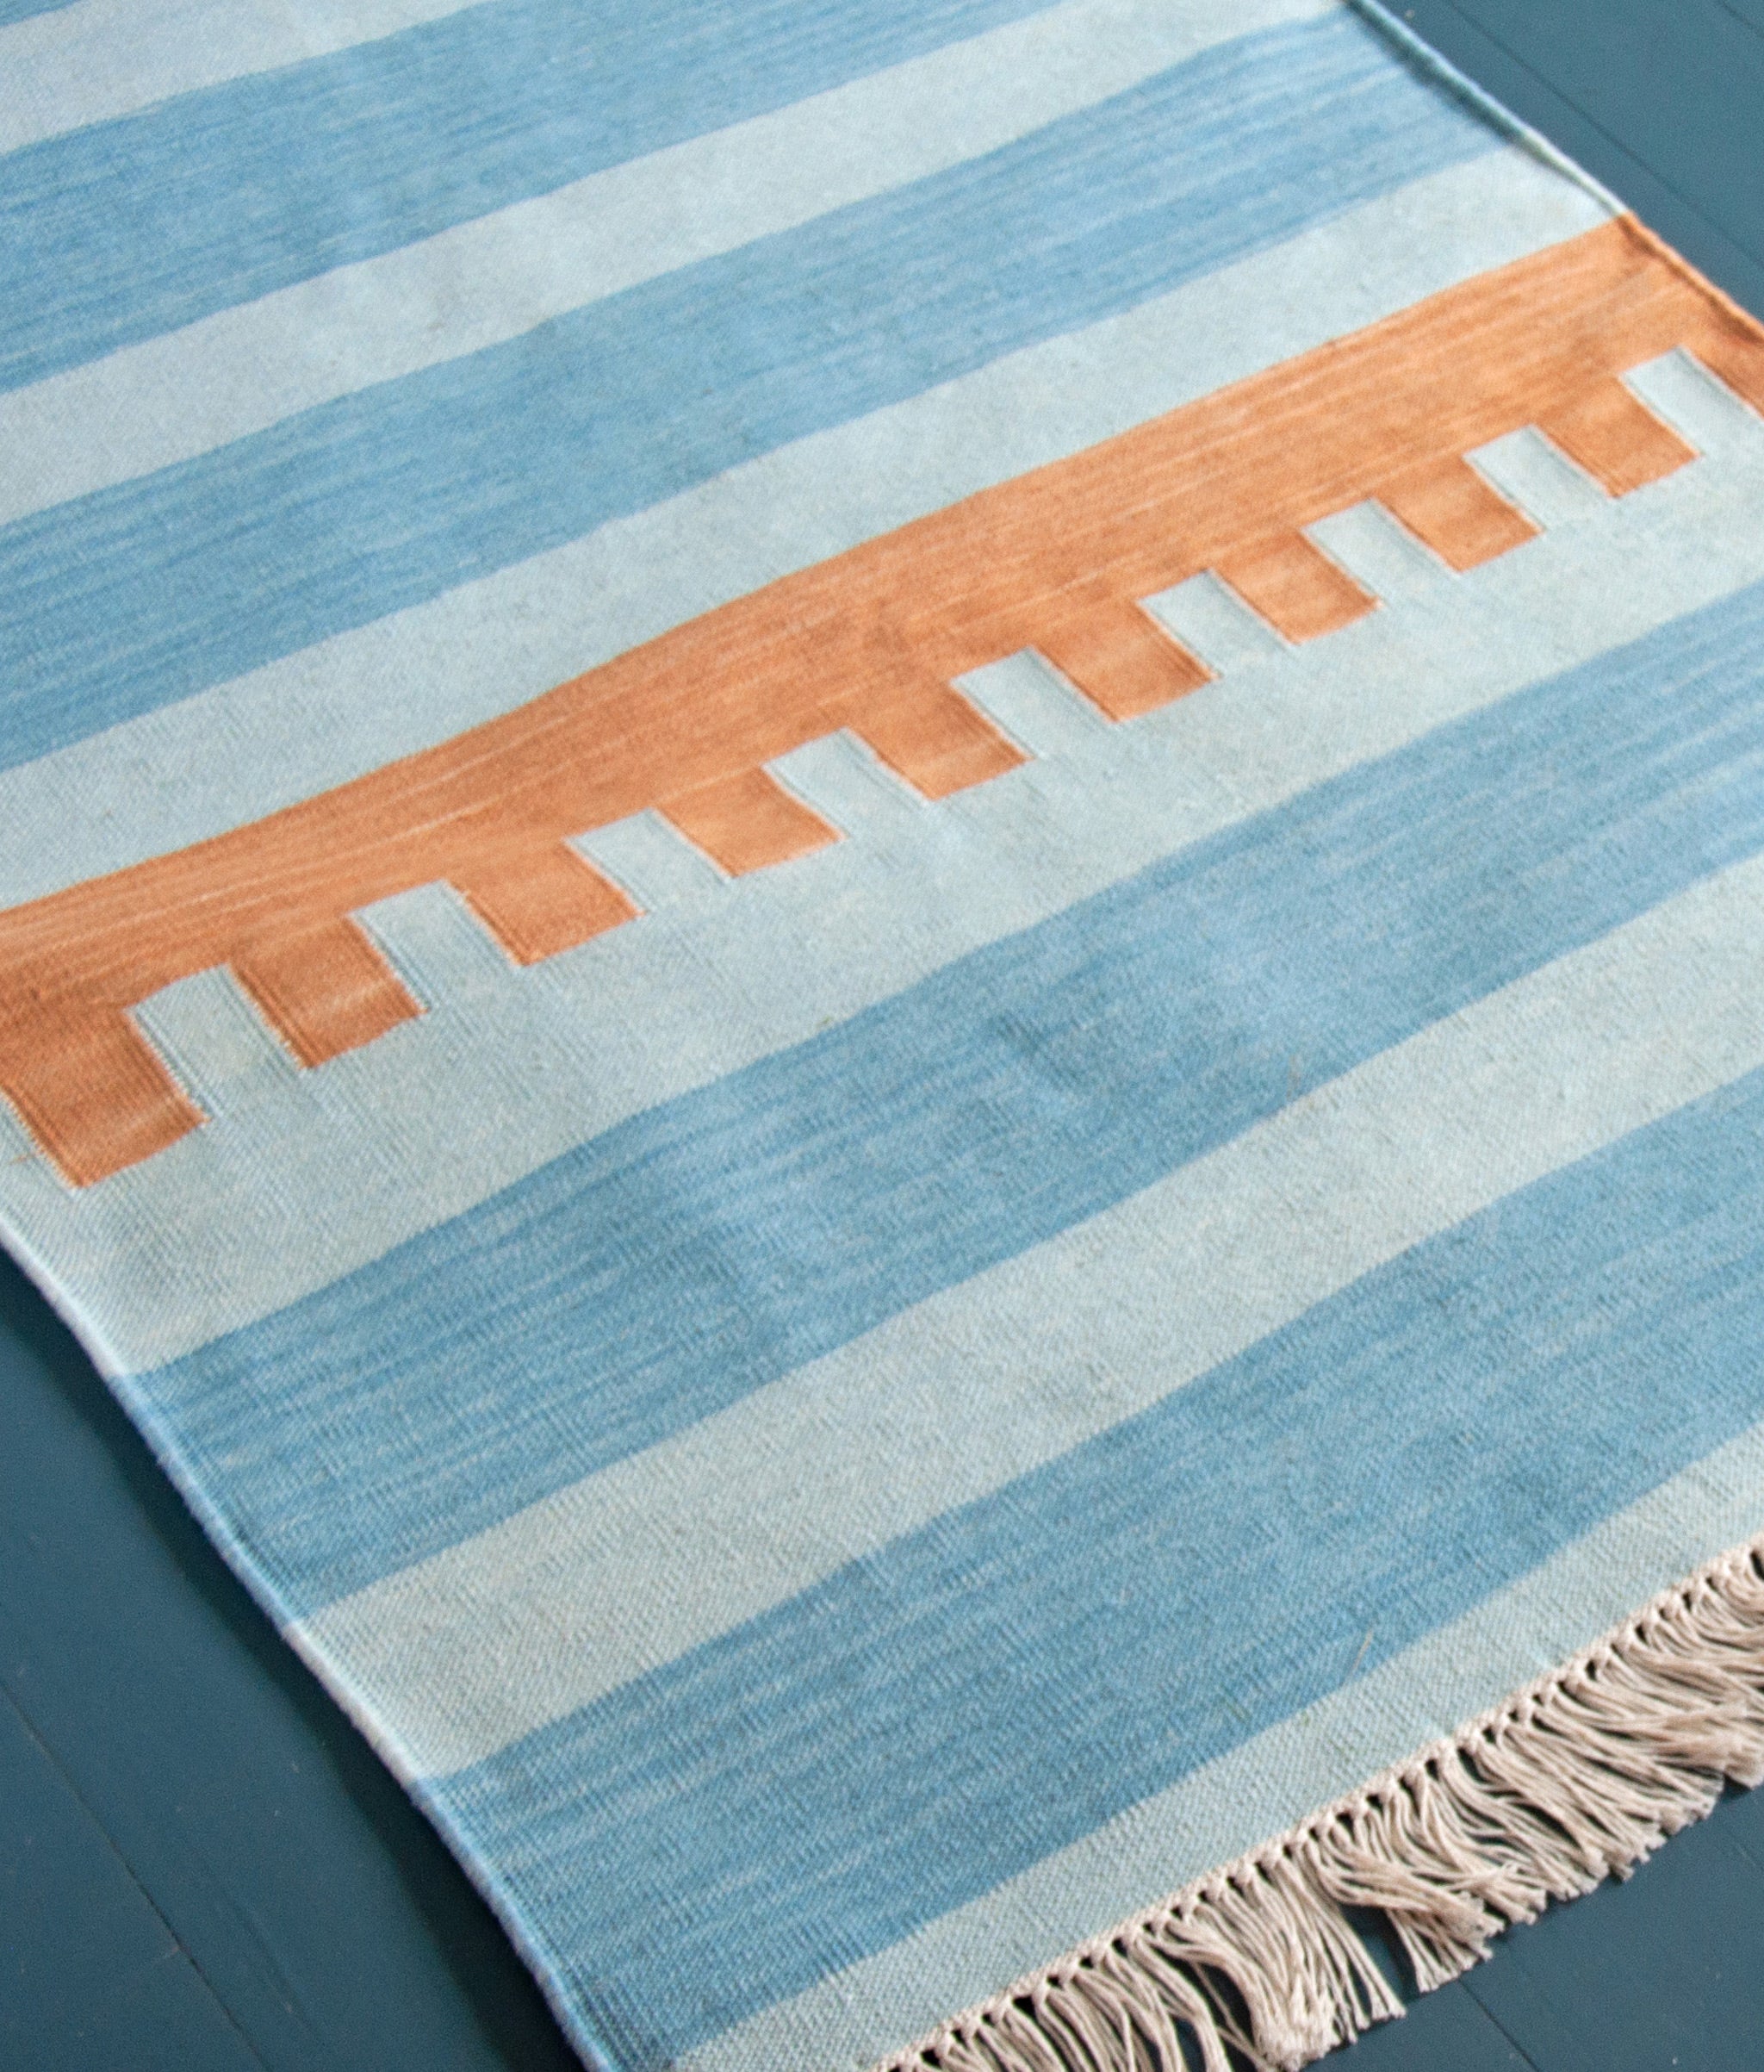 Andes Stripe in Sky Runner shown on blue-painted wood floor.